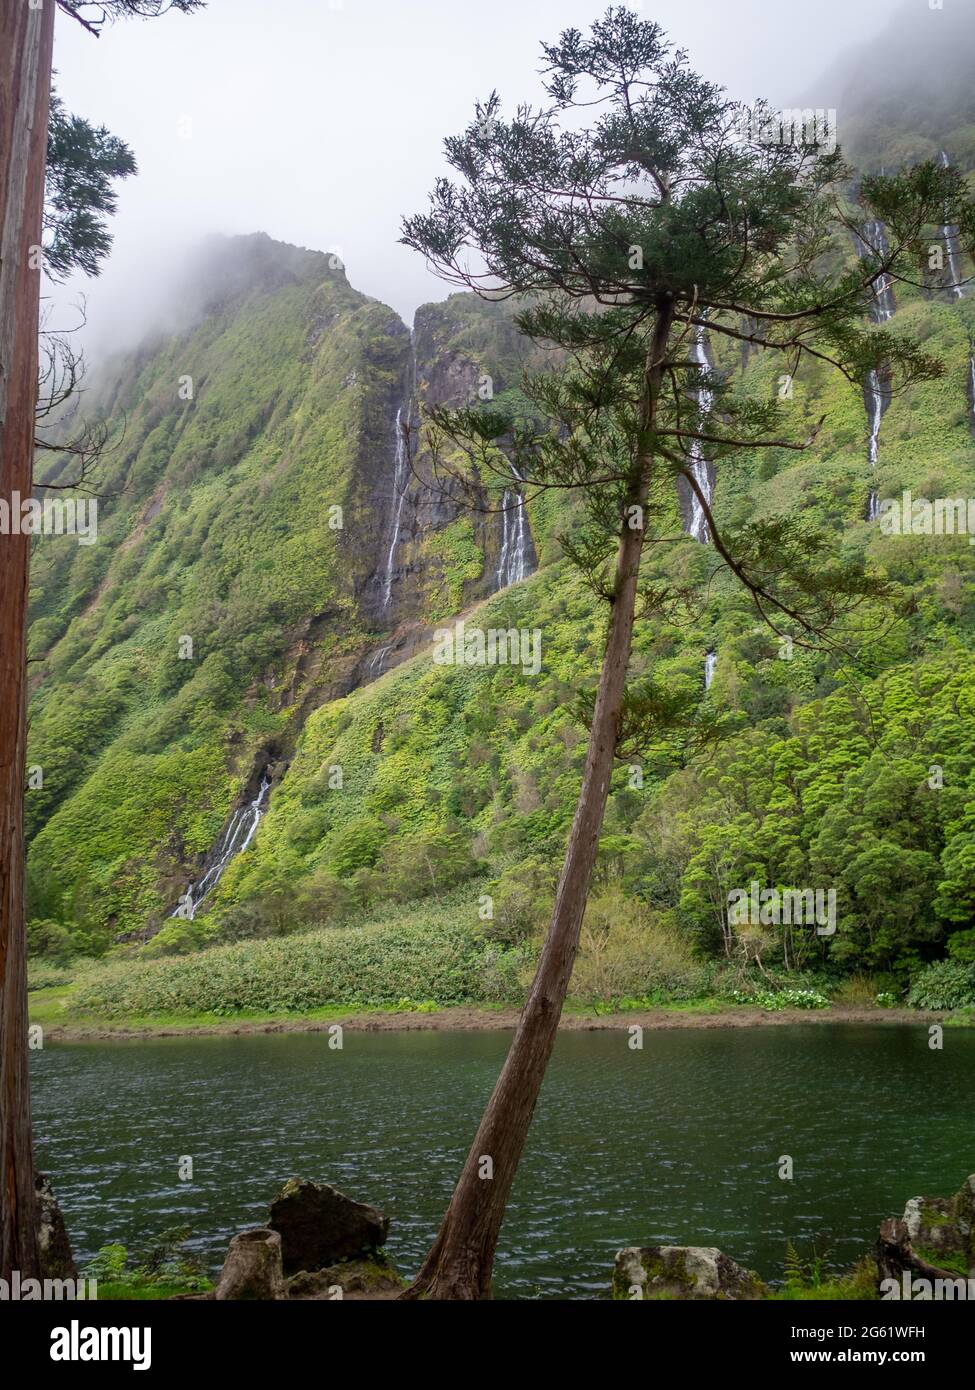 Poço da Alagoinha raw nature, Flores Island, Azores Stock Photo